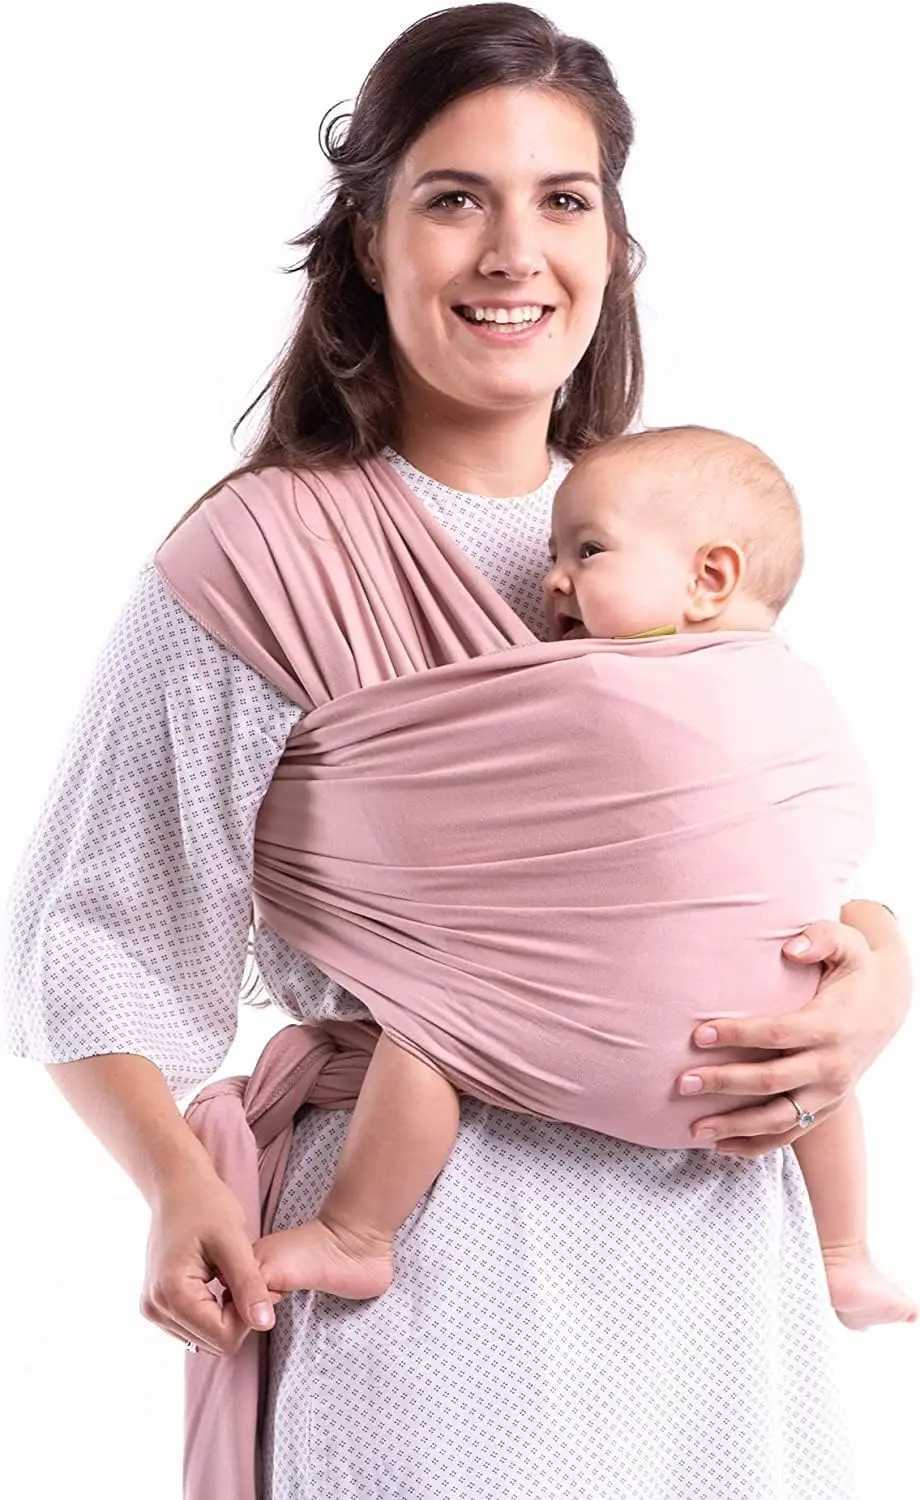 Przewoźniki plecaki plecaki bawełniane opakowanie dla niemowląt przewoźnik bawełniany przewoźnik podróży dla noworodków do małych dzieci dziecięcych proce 0-36 miesięcy T240509